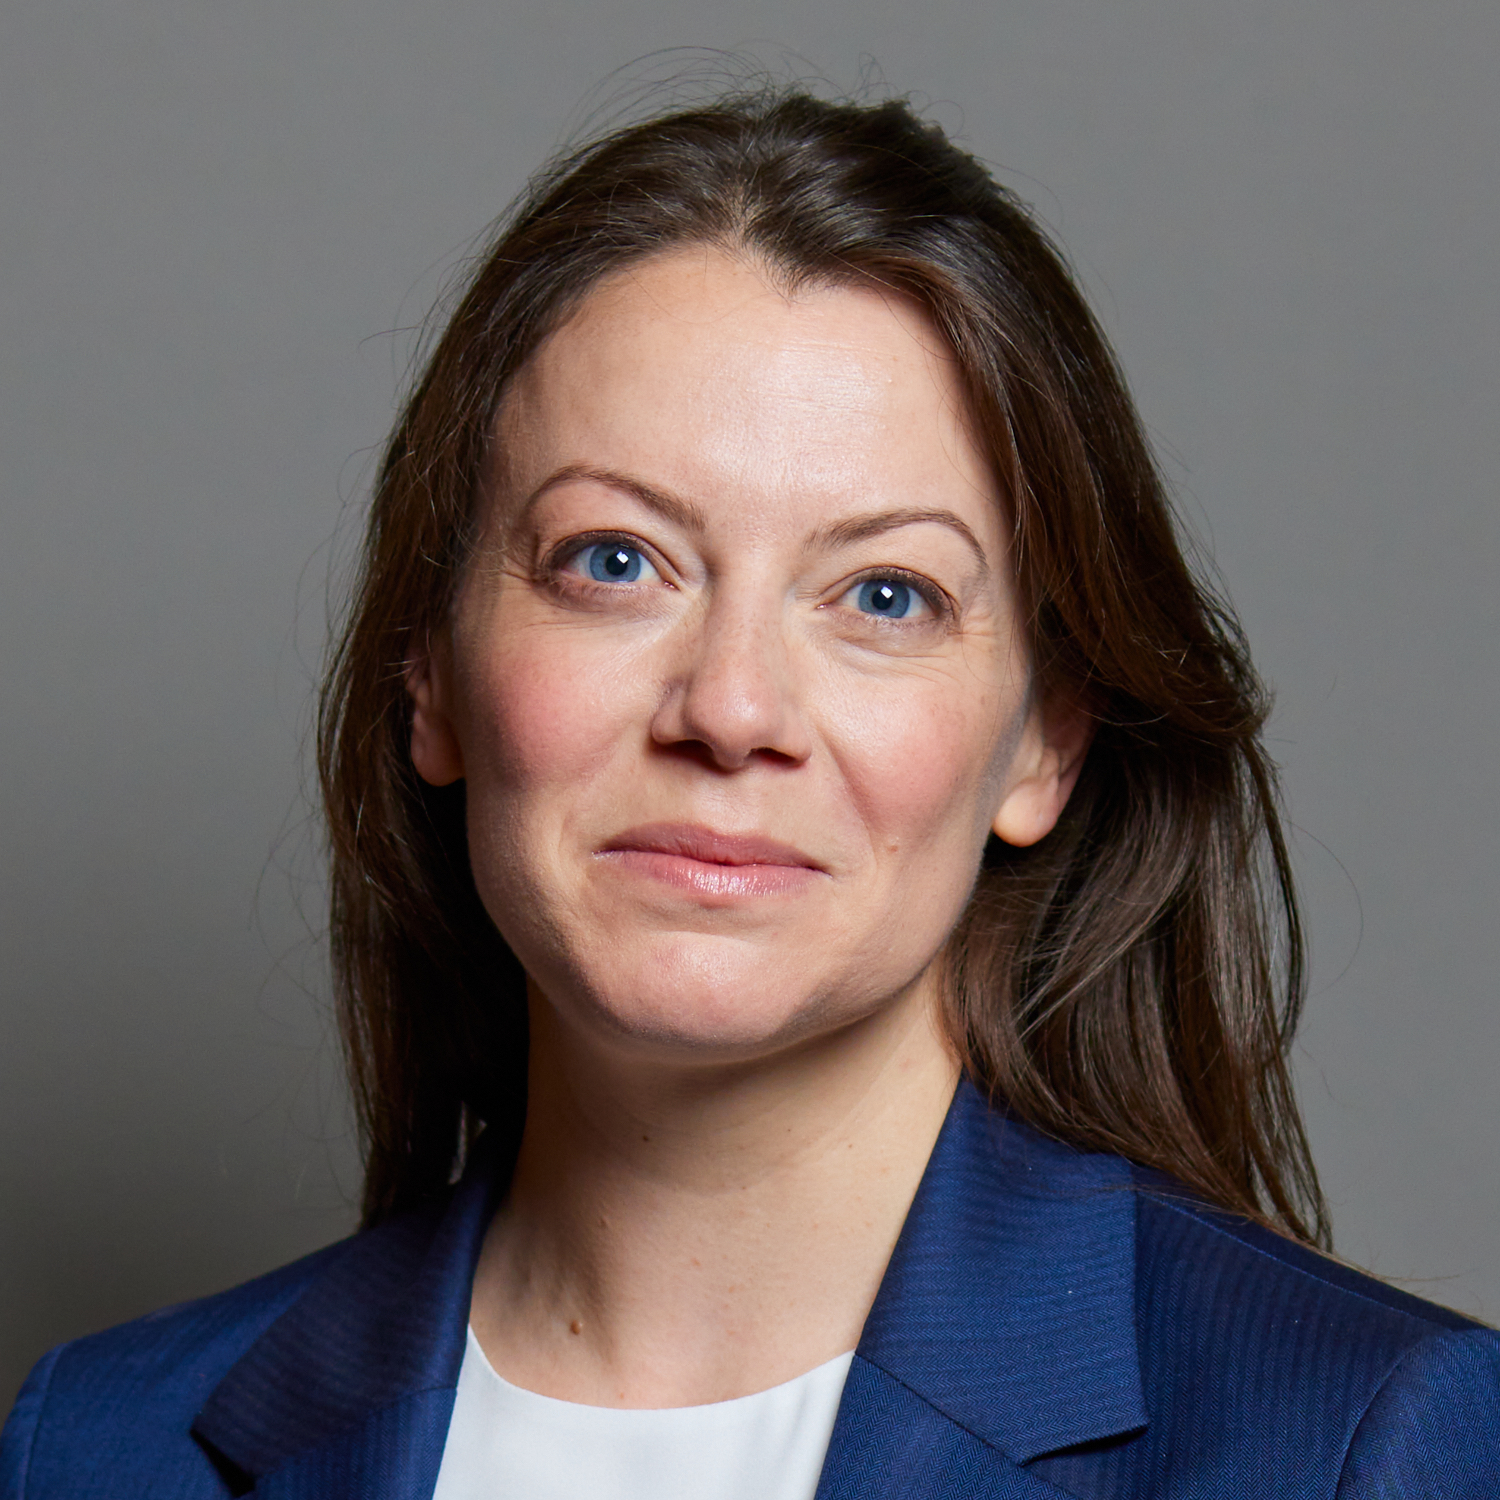 Sarah Green MP